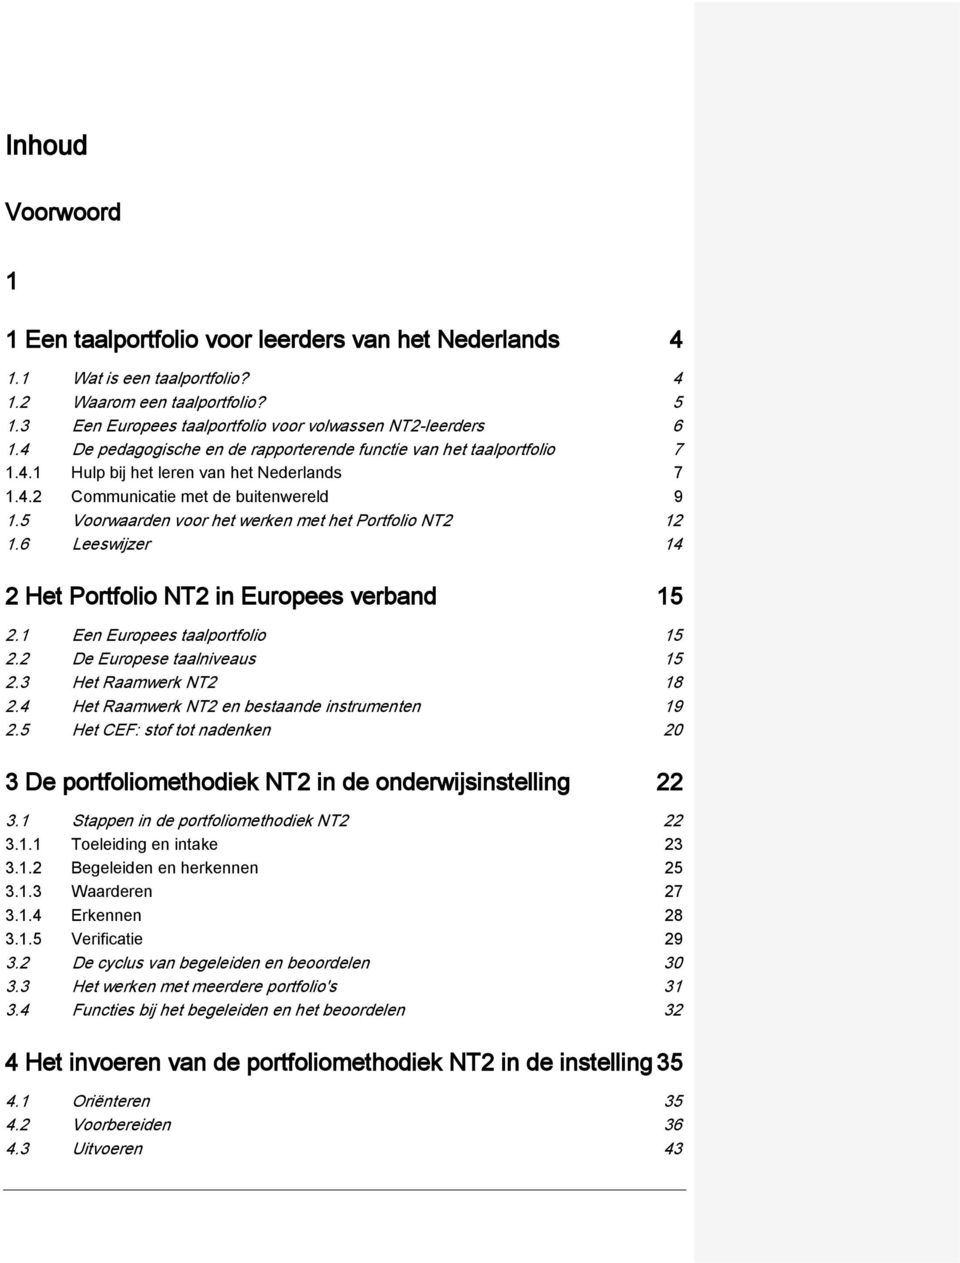 5 Voorwaarden voor het werken met het Portfolio NT2 12 1.6 Leeswijzer 14 2 Het Portfolio NT2 in Europees verband 15 2.1 Een Europees taalportfolio 15 2.2 De Europese taalniveaus 15 2.